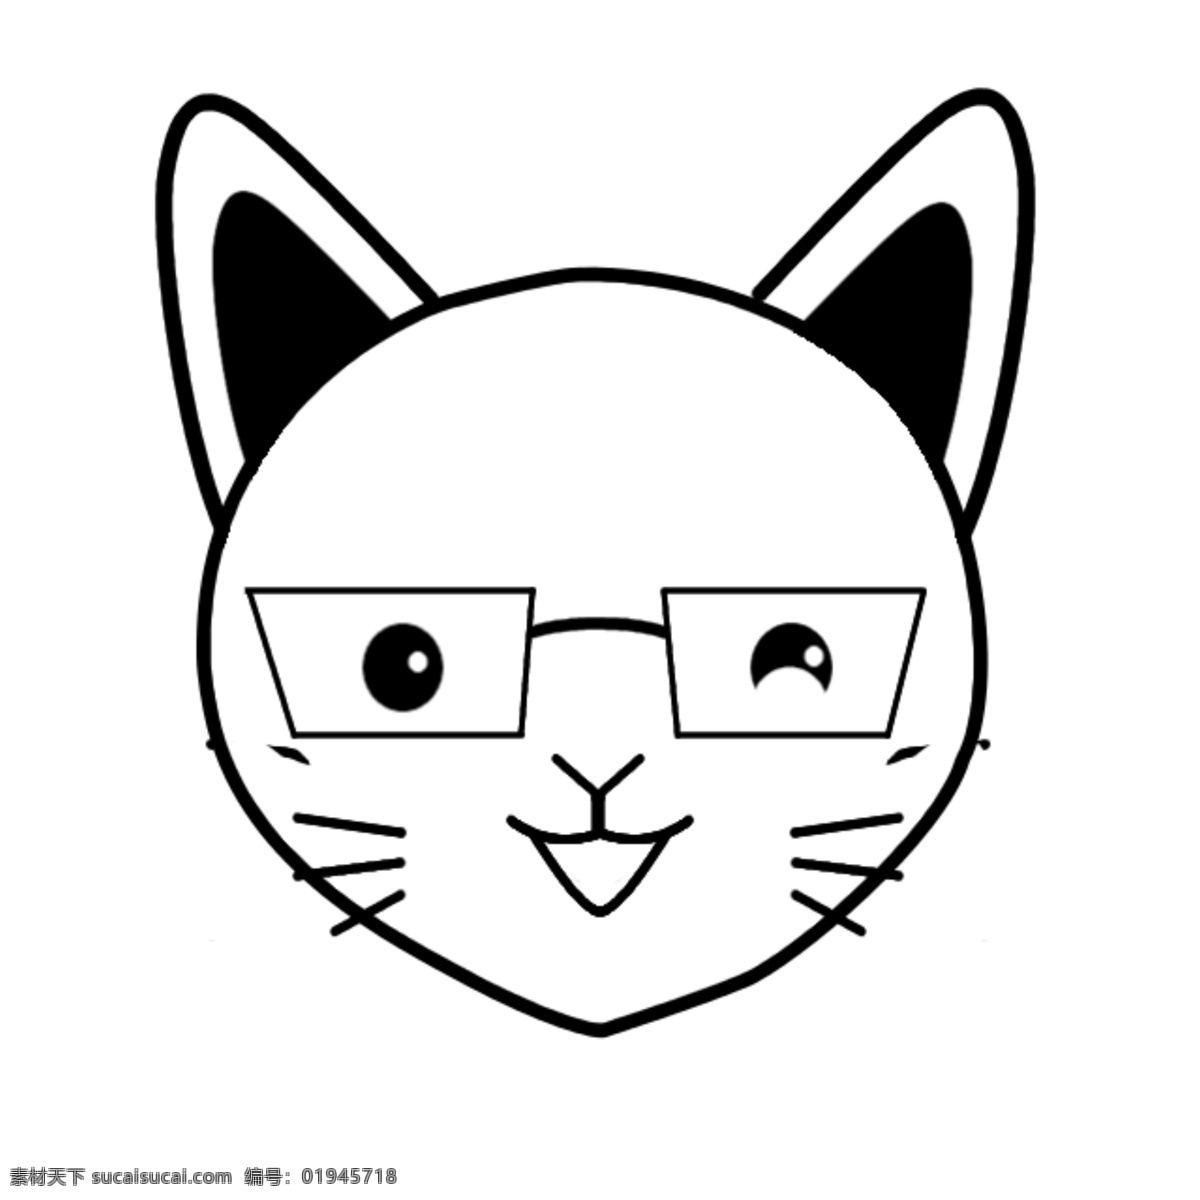 卡通 猫 黑白 图像 头像 原创 自娱自乐 萌 家禽家畜 生物世界